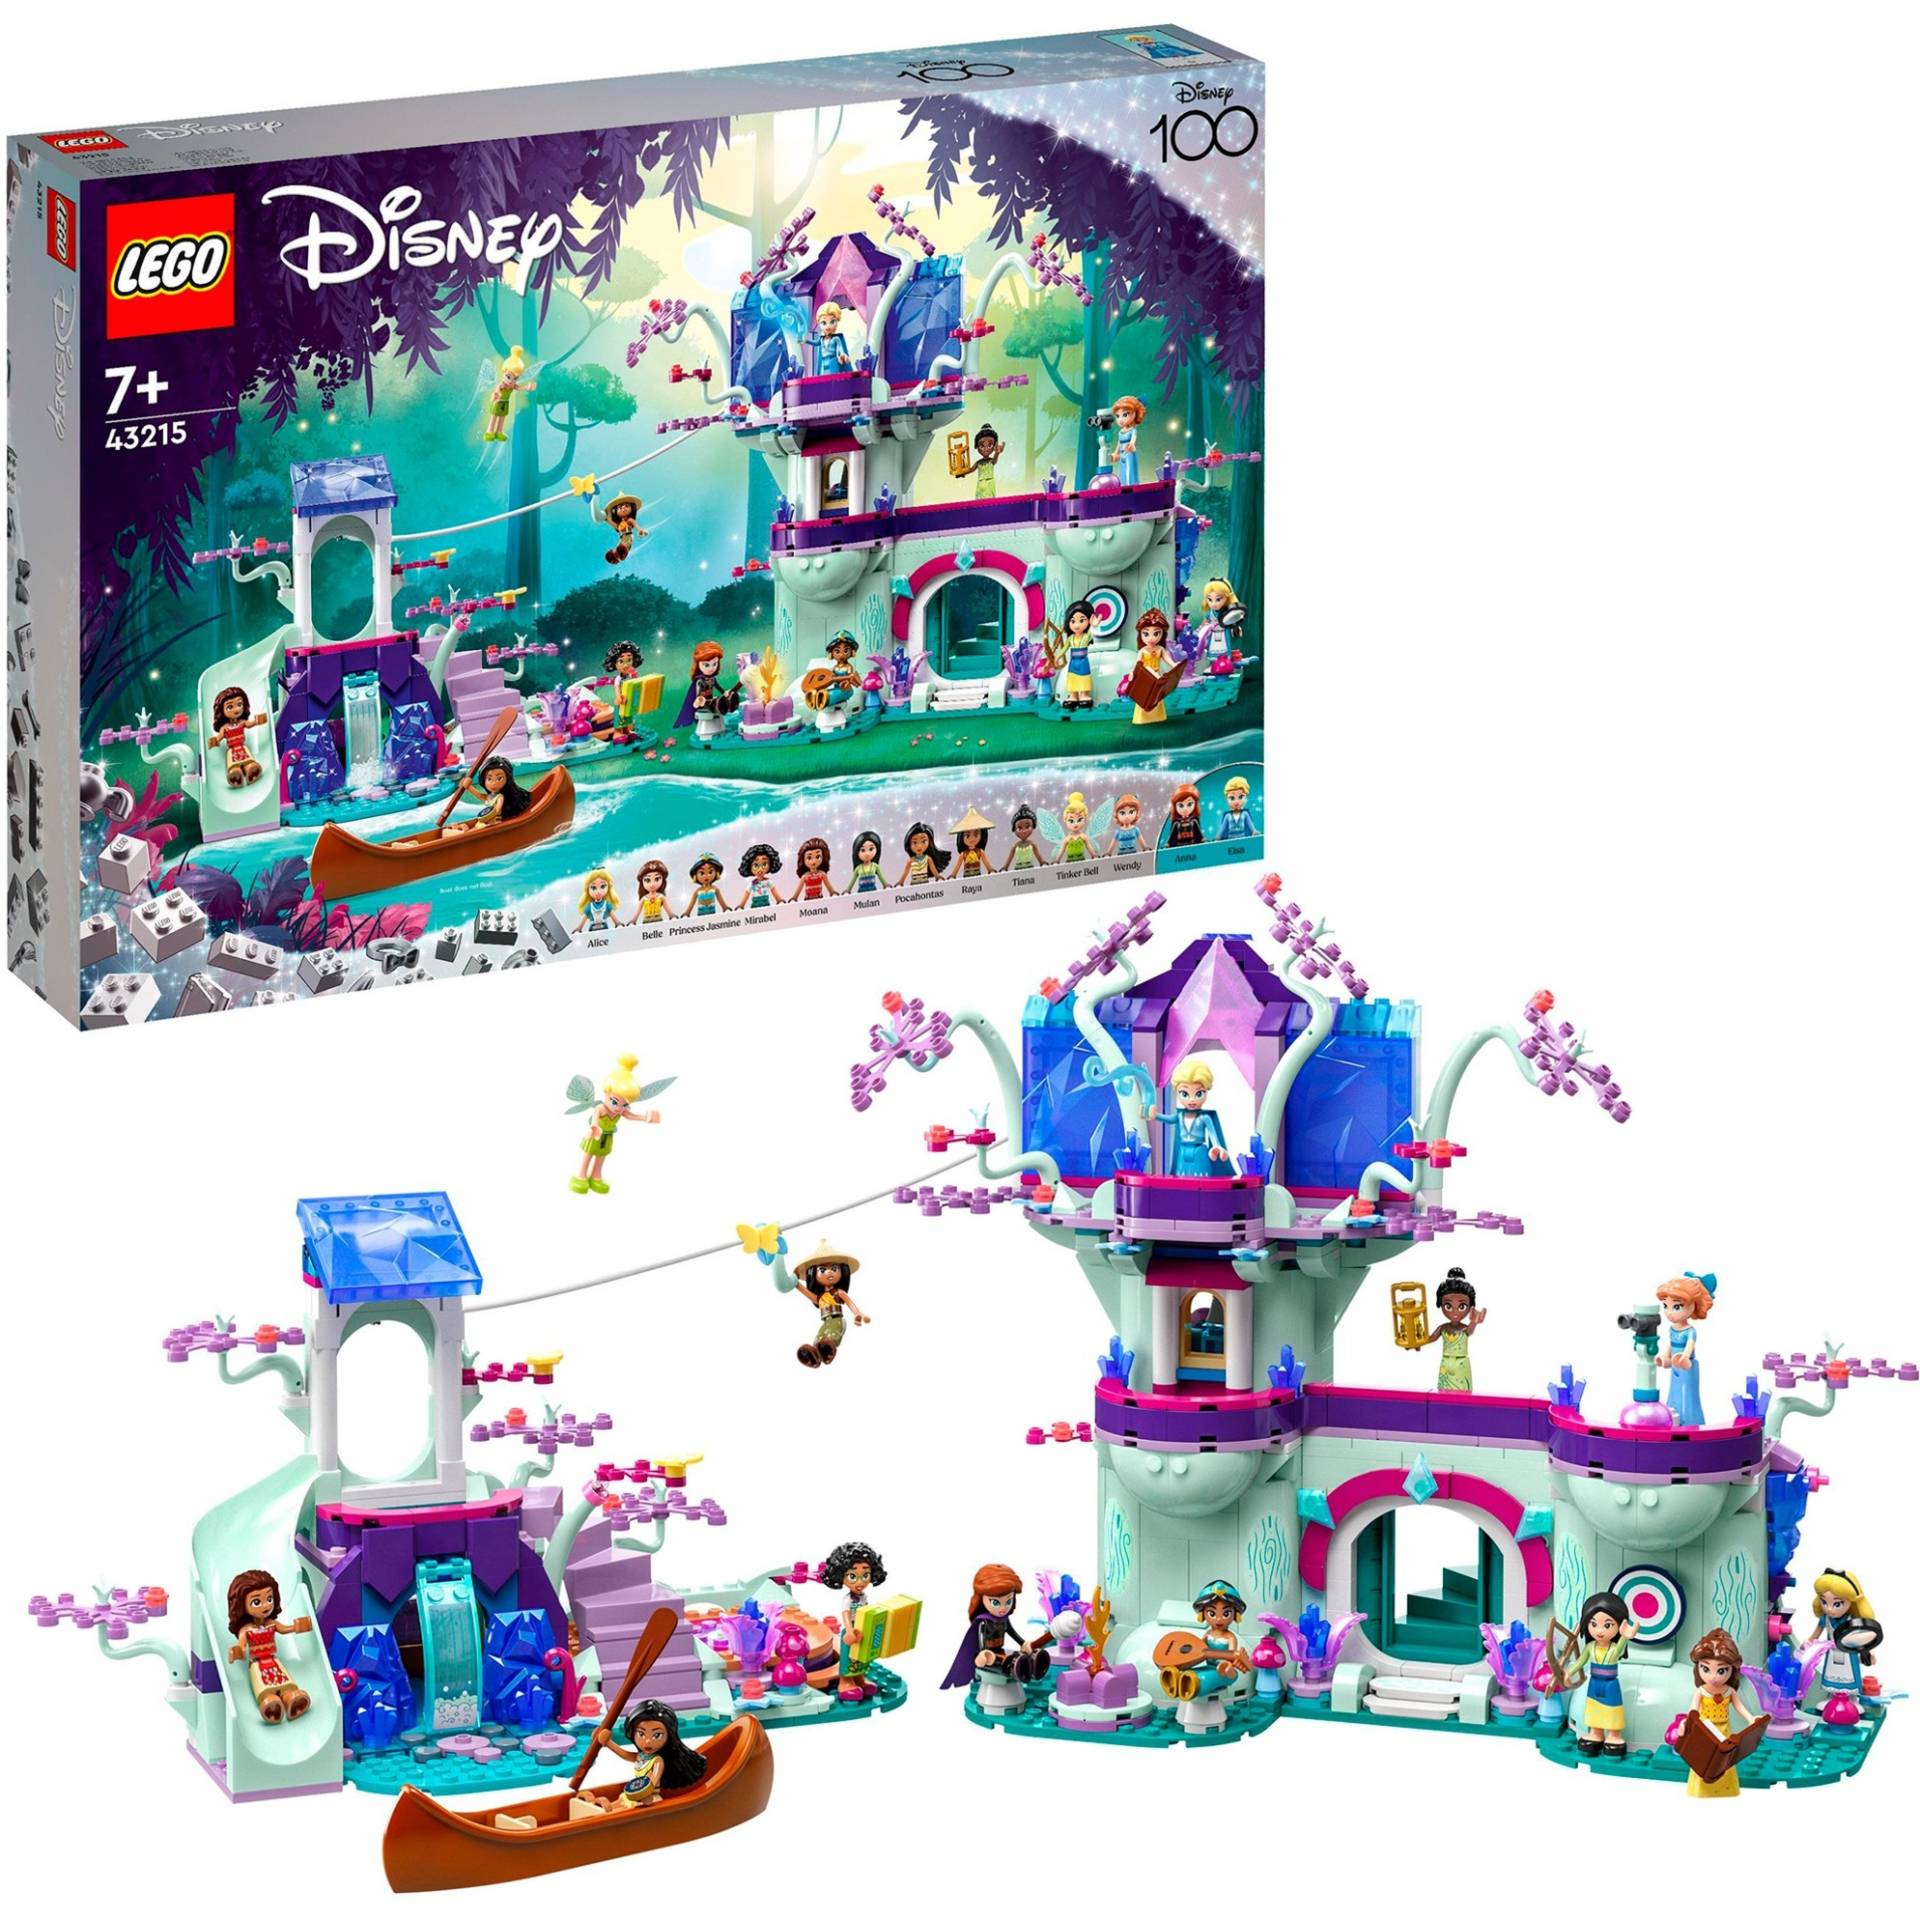 43215 Disney Das verzauberte Baumhaus, Konstruktionsspielzeug von Lego